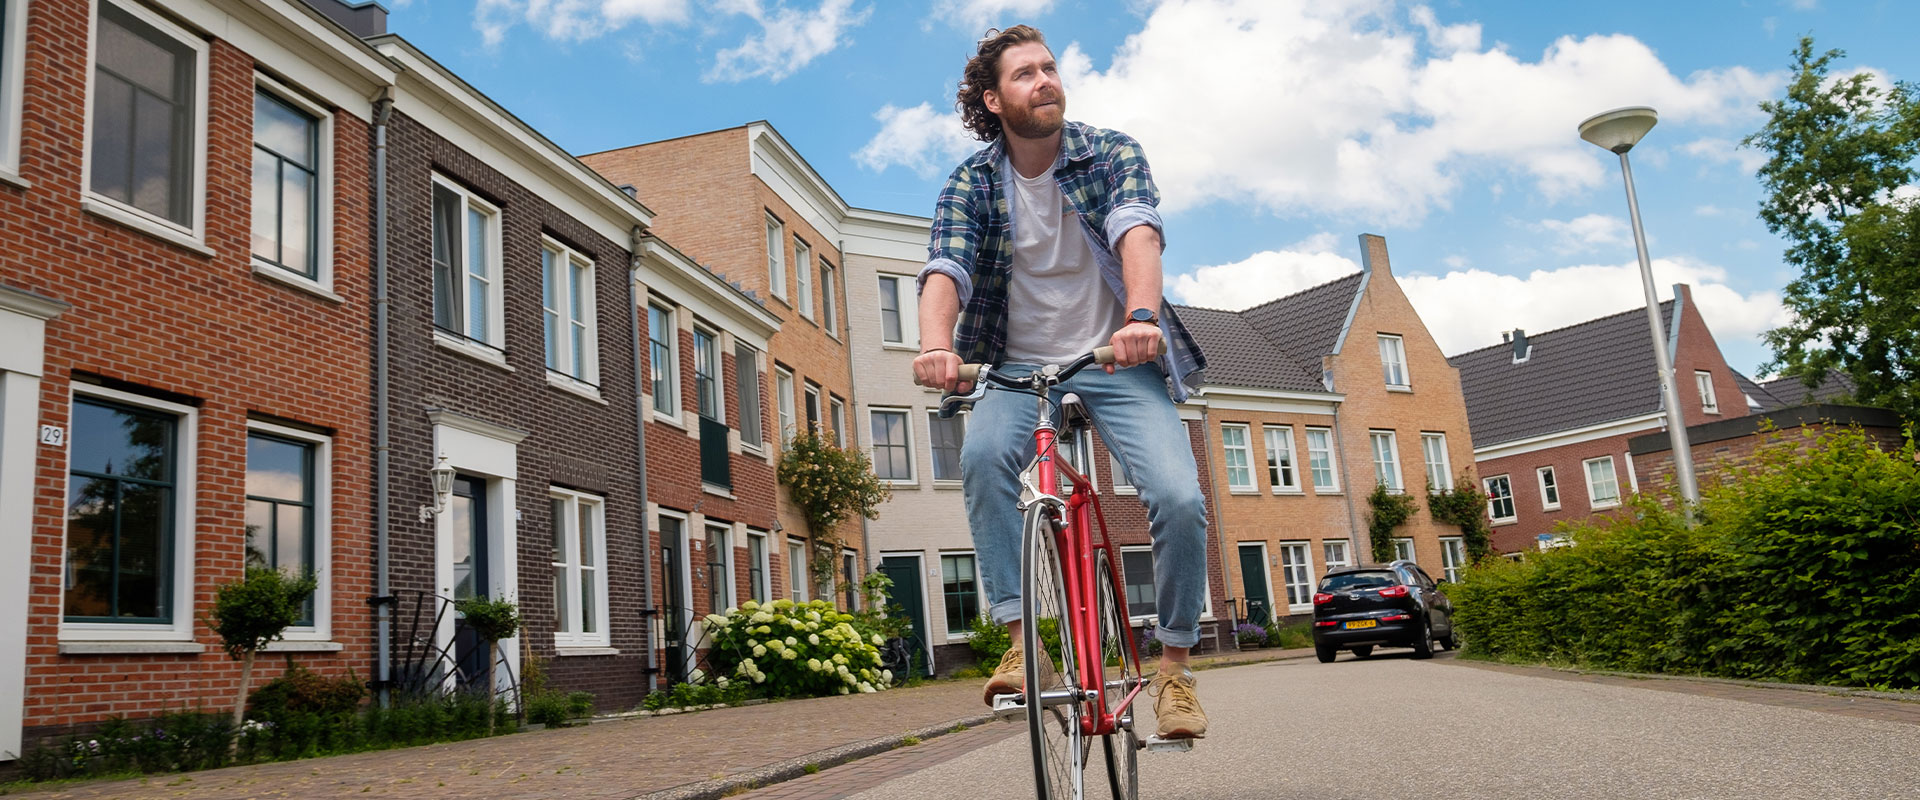 Jonge man op hippe fiets in woonwijk